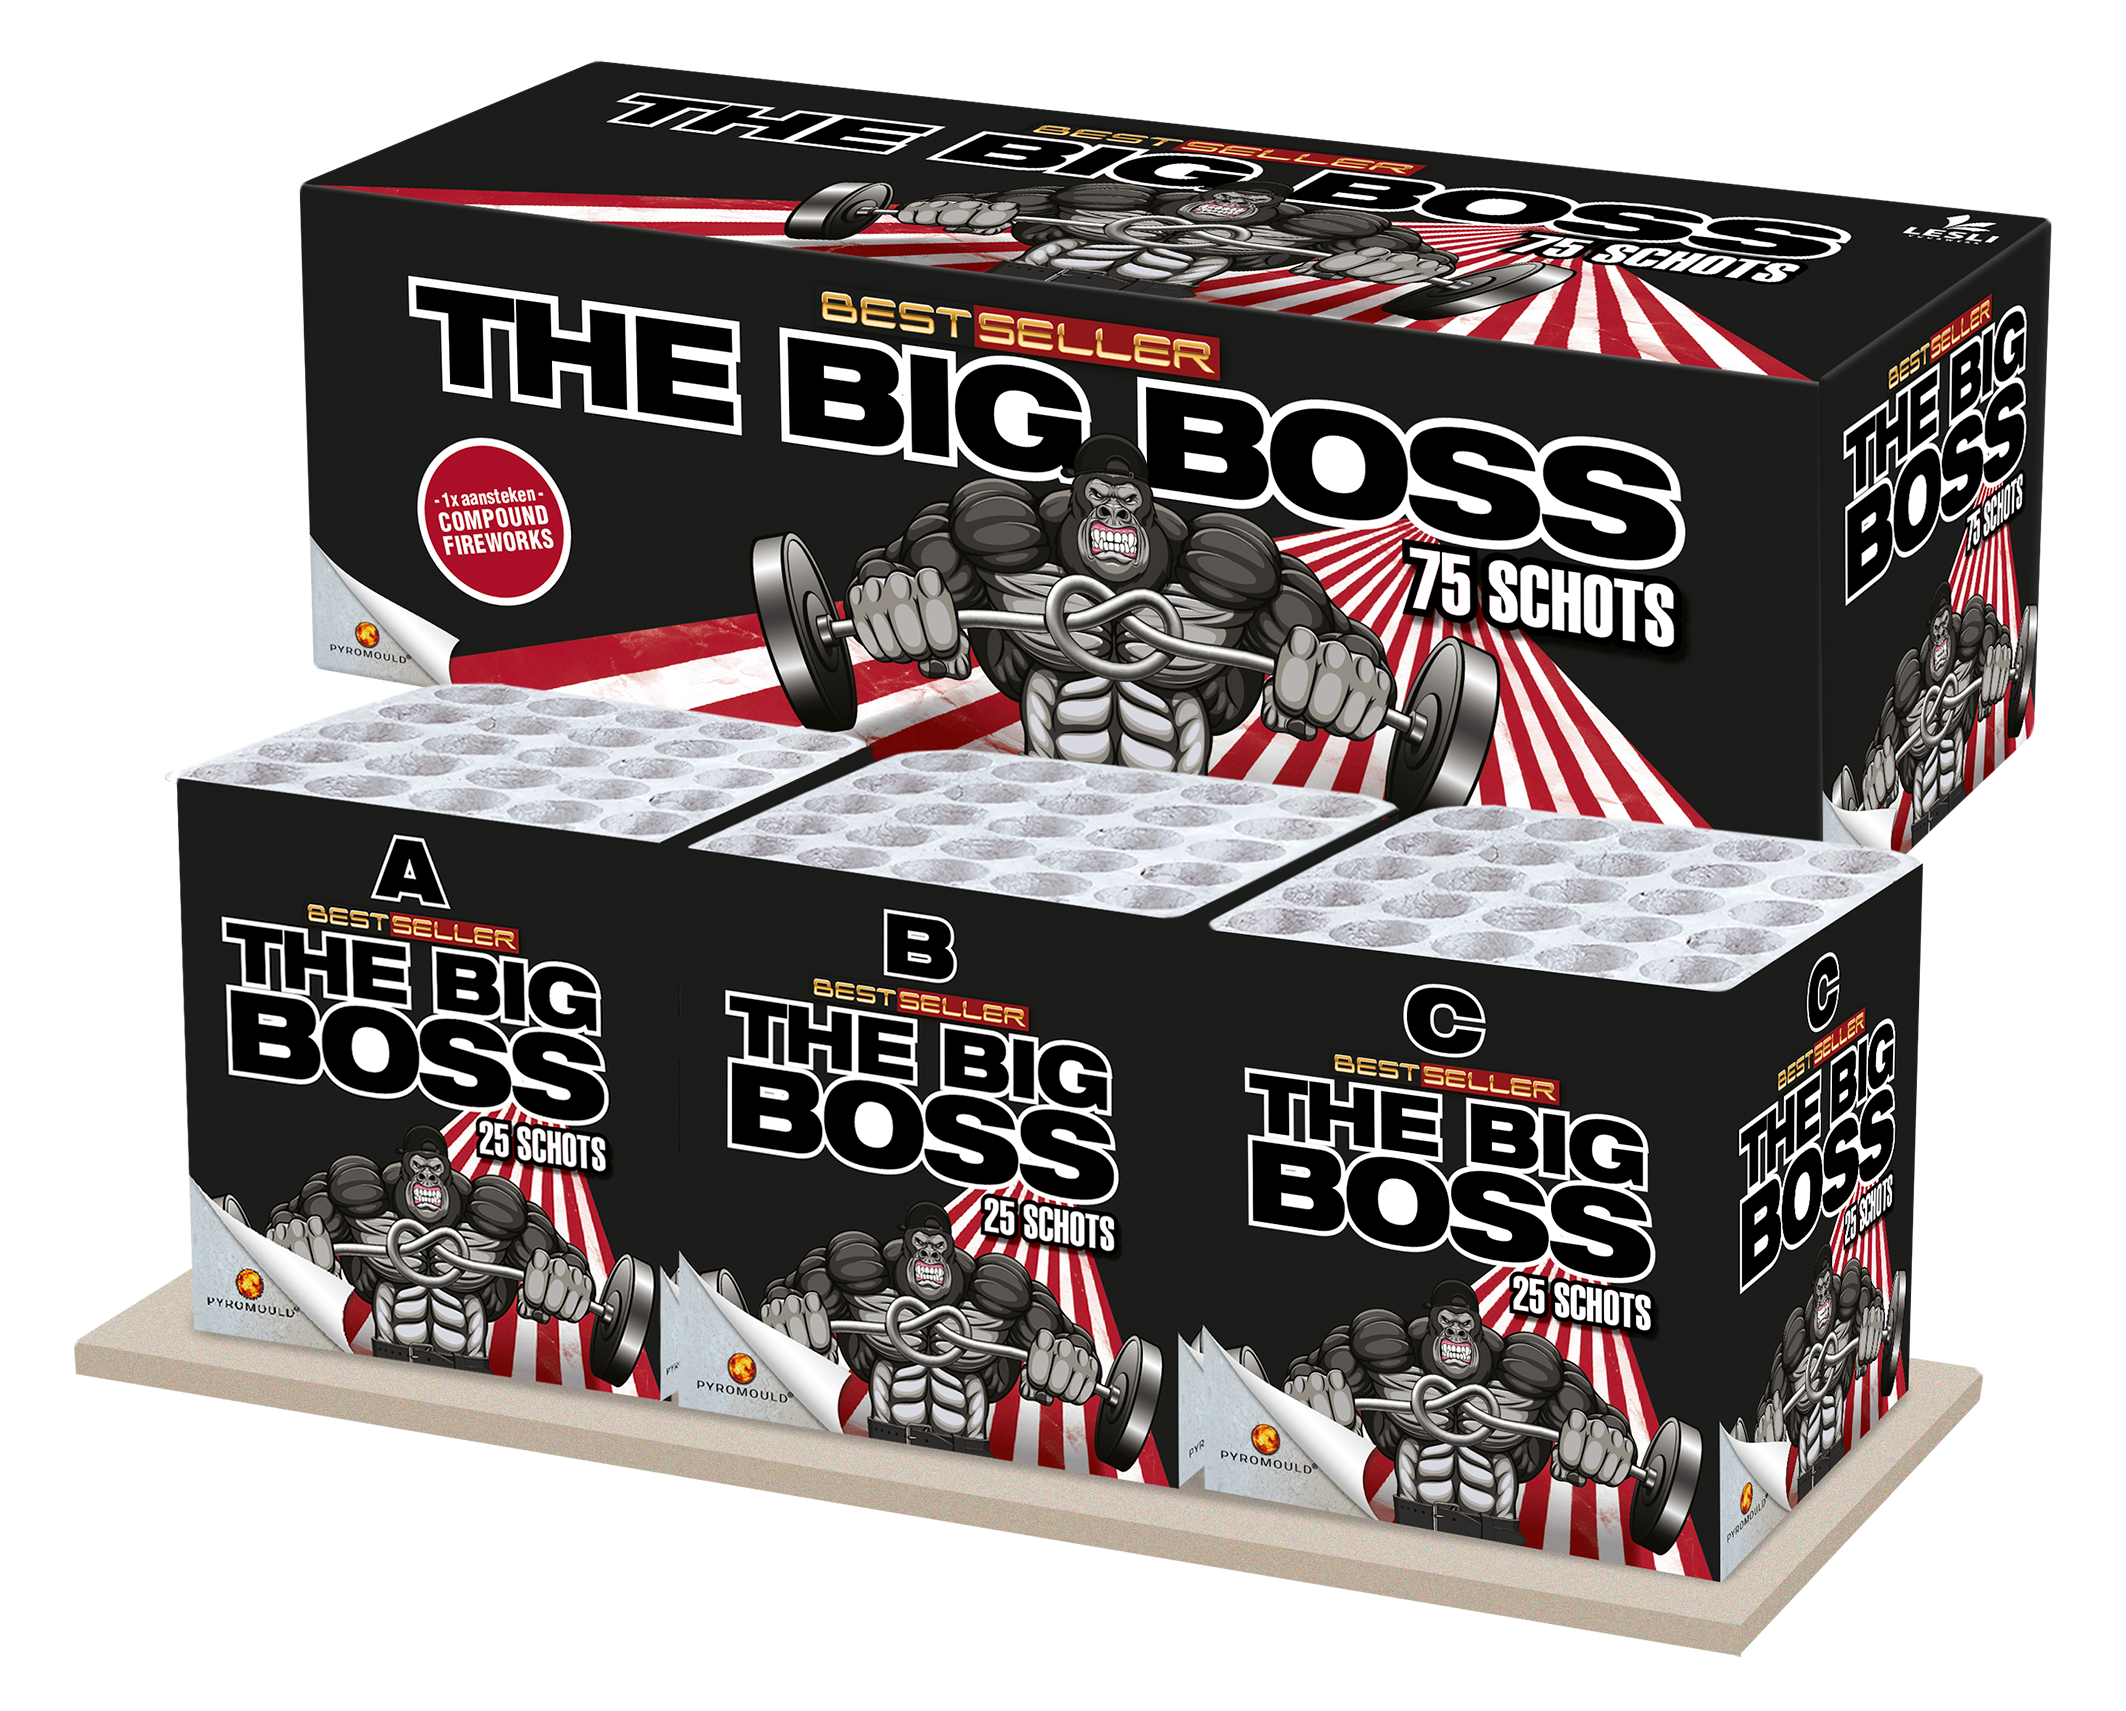 3004-the-big-boss-bestseller-lesli_af814224-ecb0-4aa6-b1a6-5f31f6ea8853.png